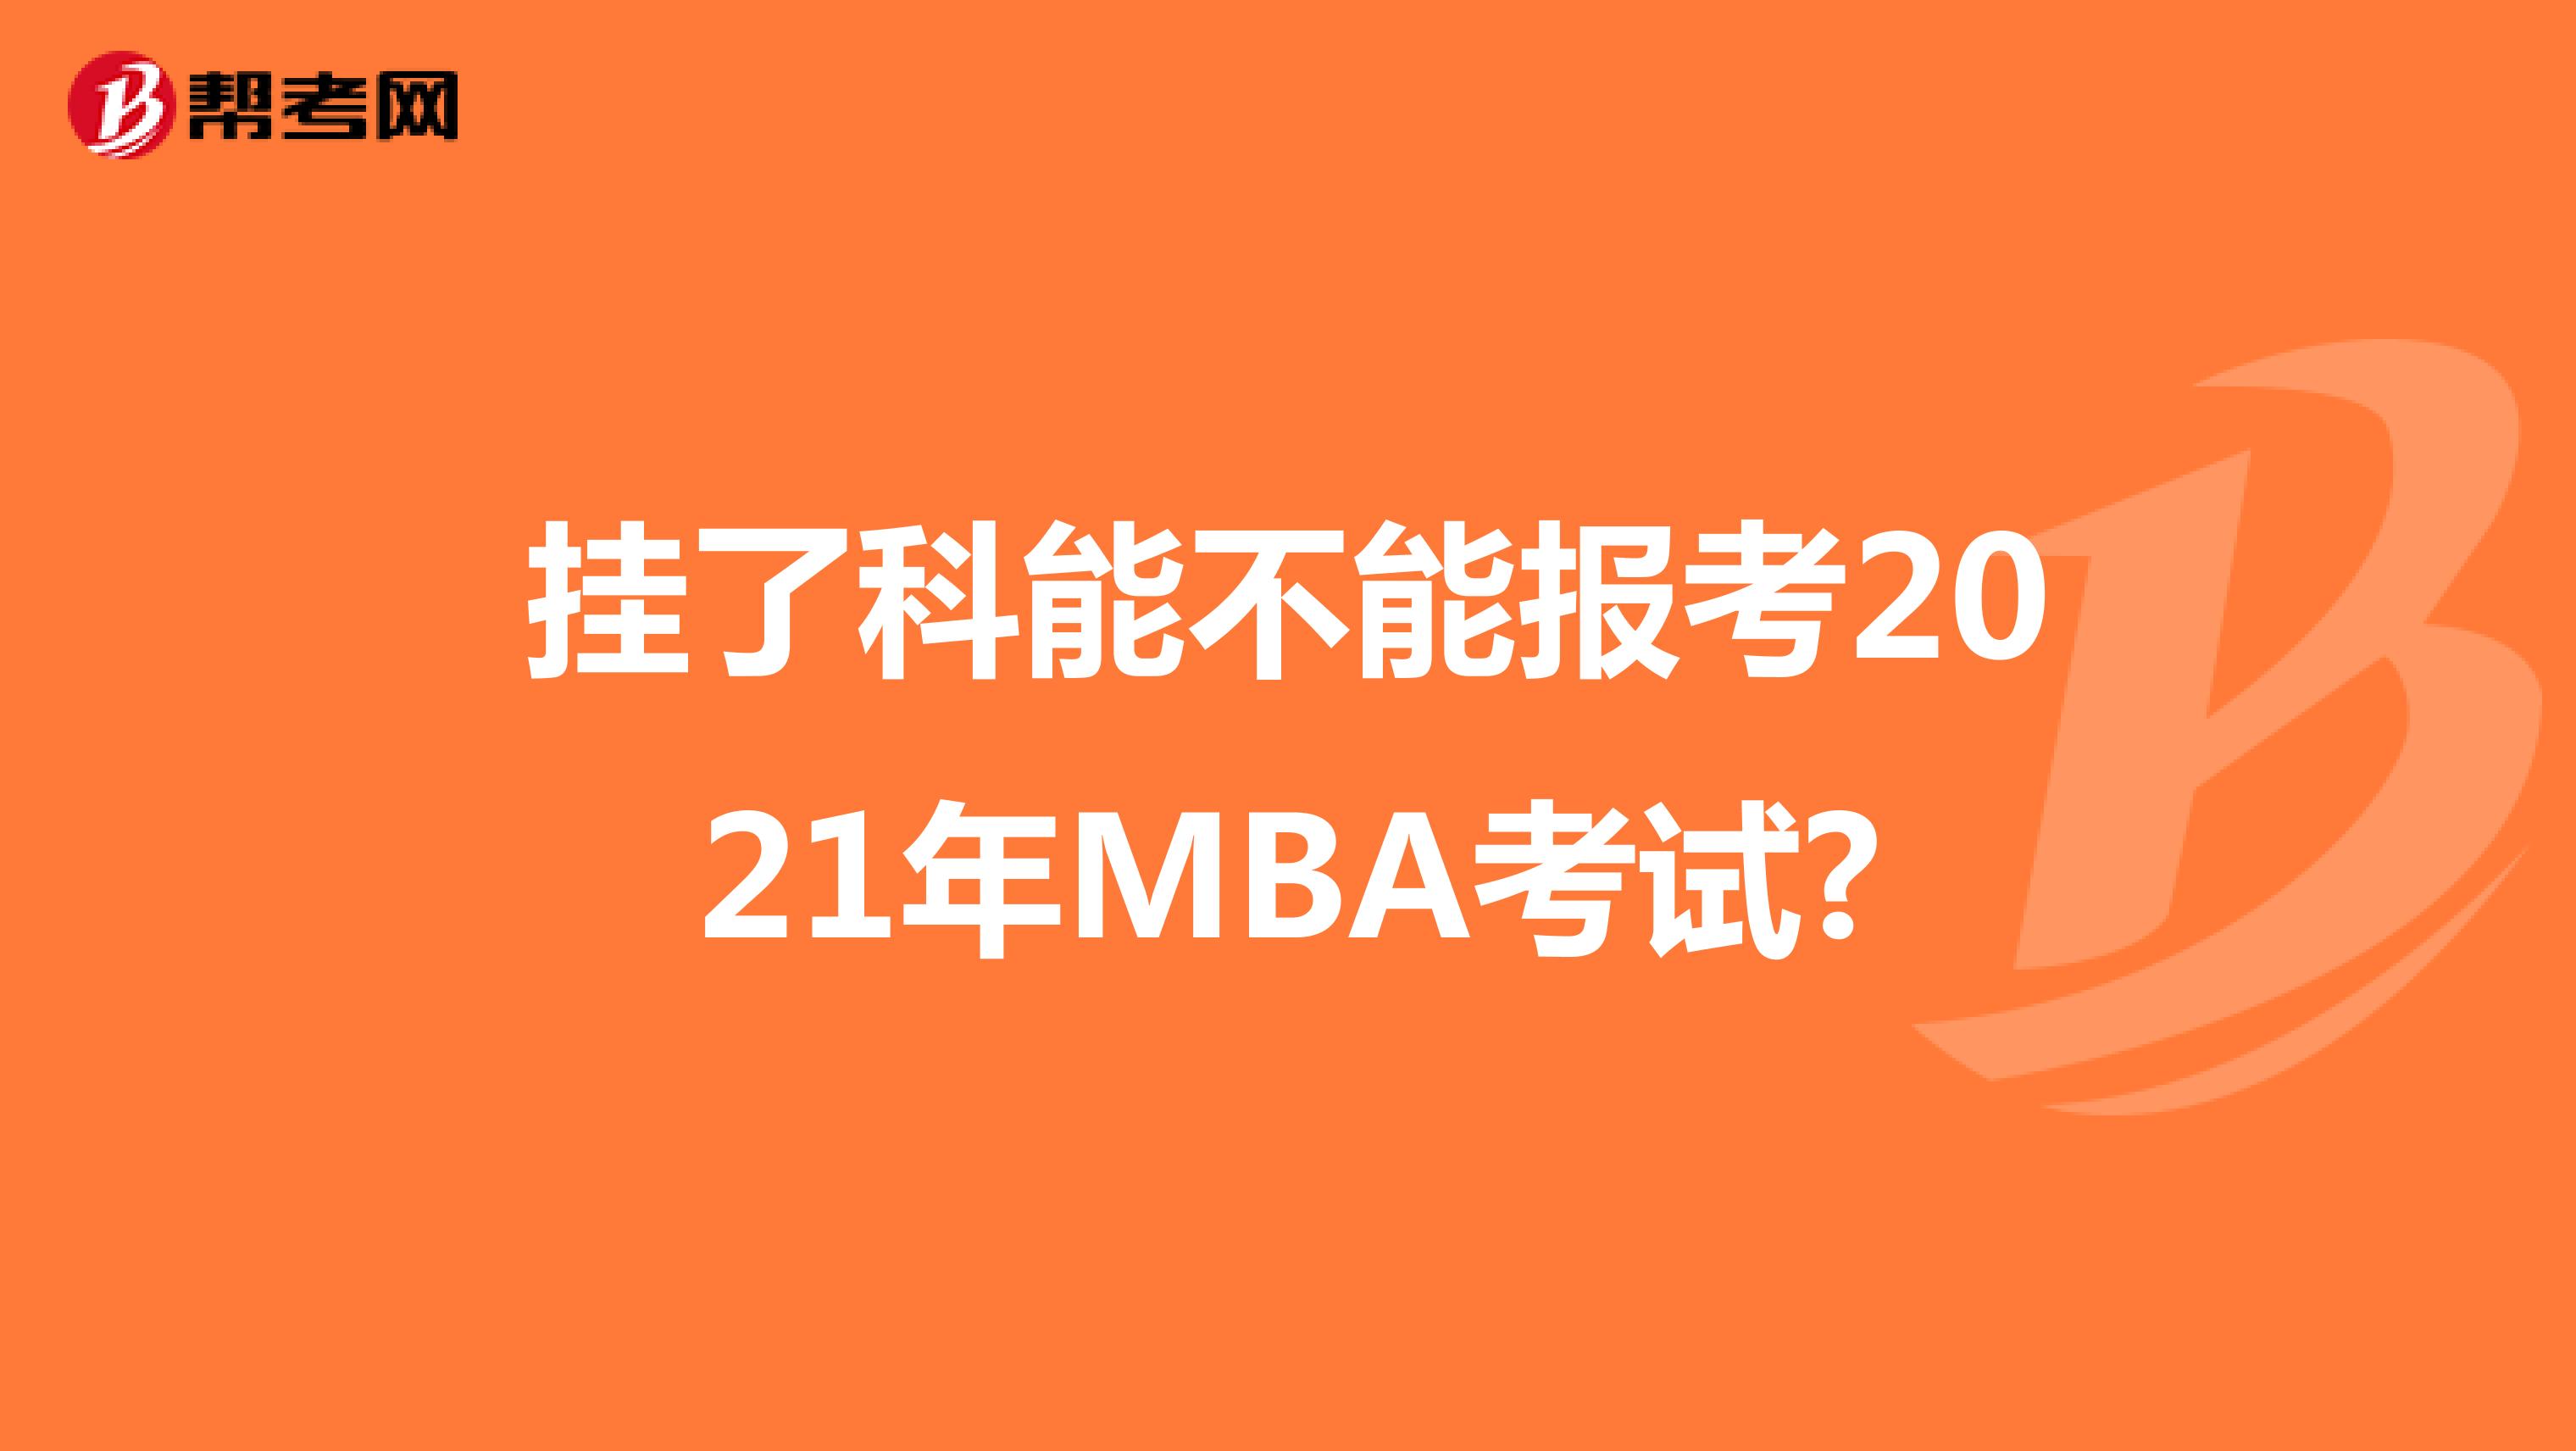 挂了科能不能报考2021年MBA考试?